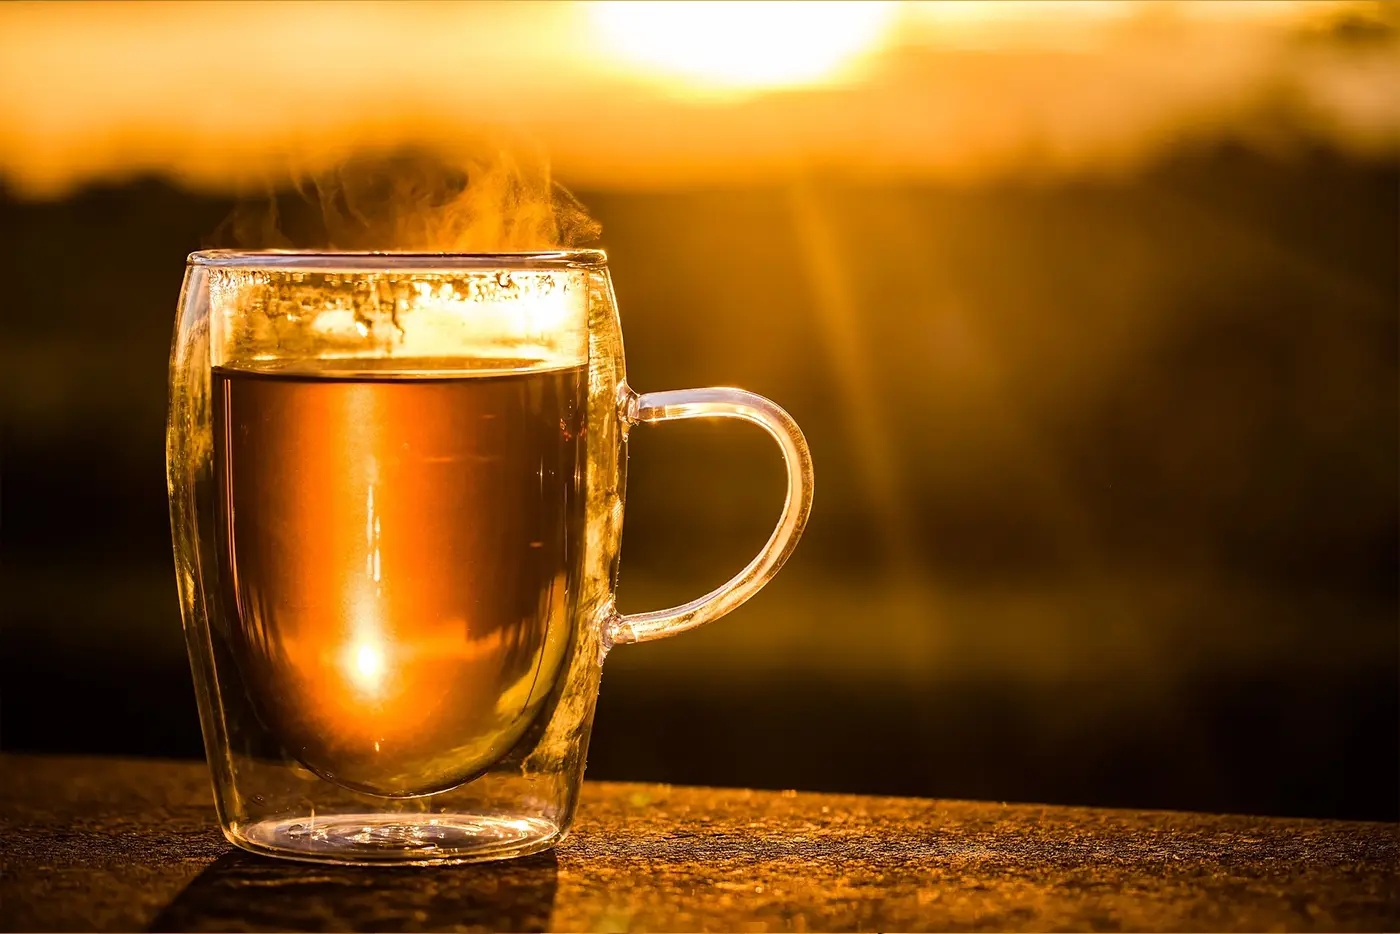 Et glasskrus med varm te med damp som stiger, plassert på en treoverflate på kontoret mot en varm solnedgangsbakgrunn.